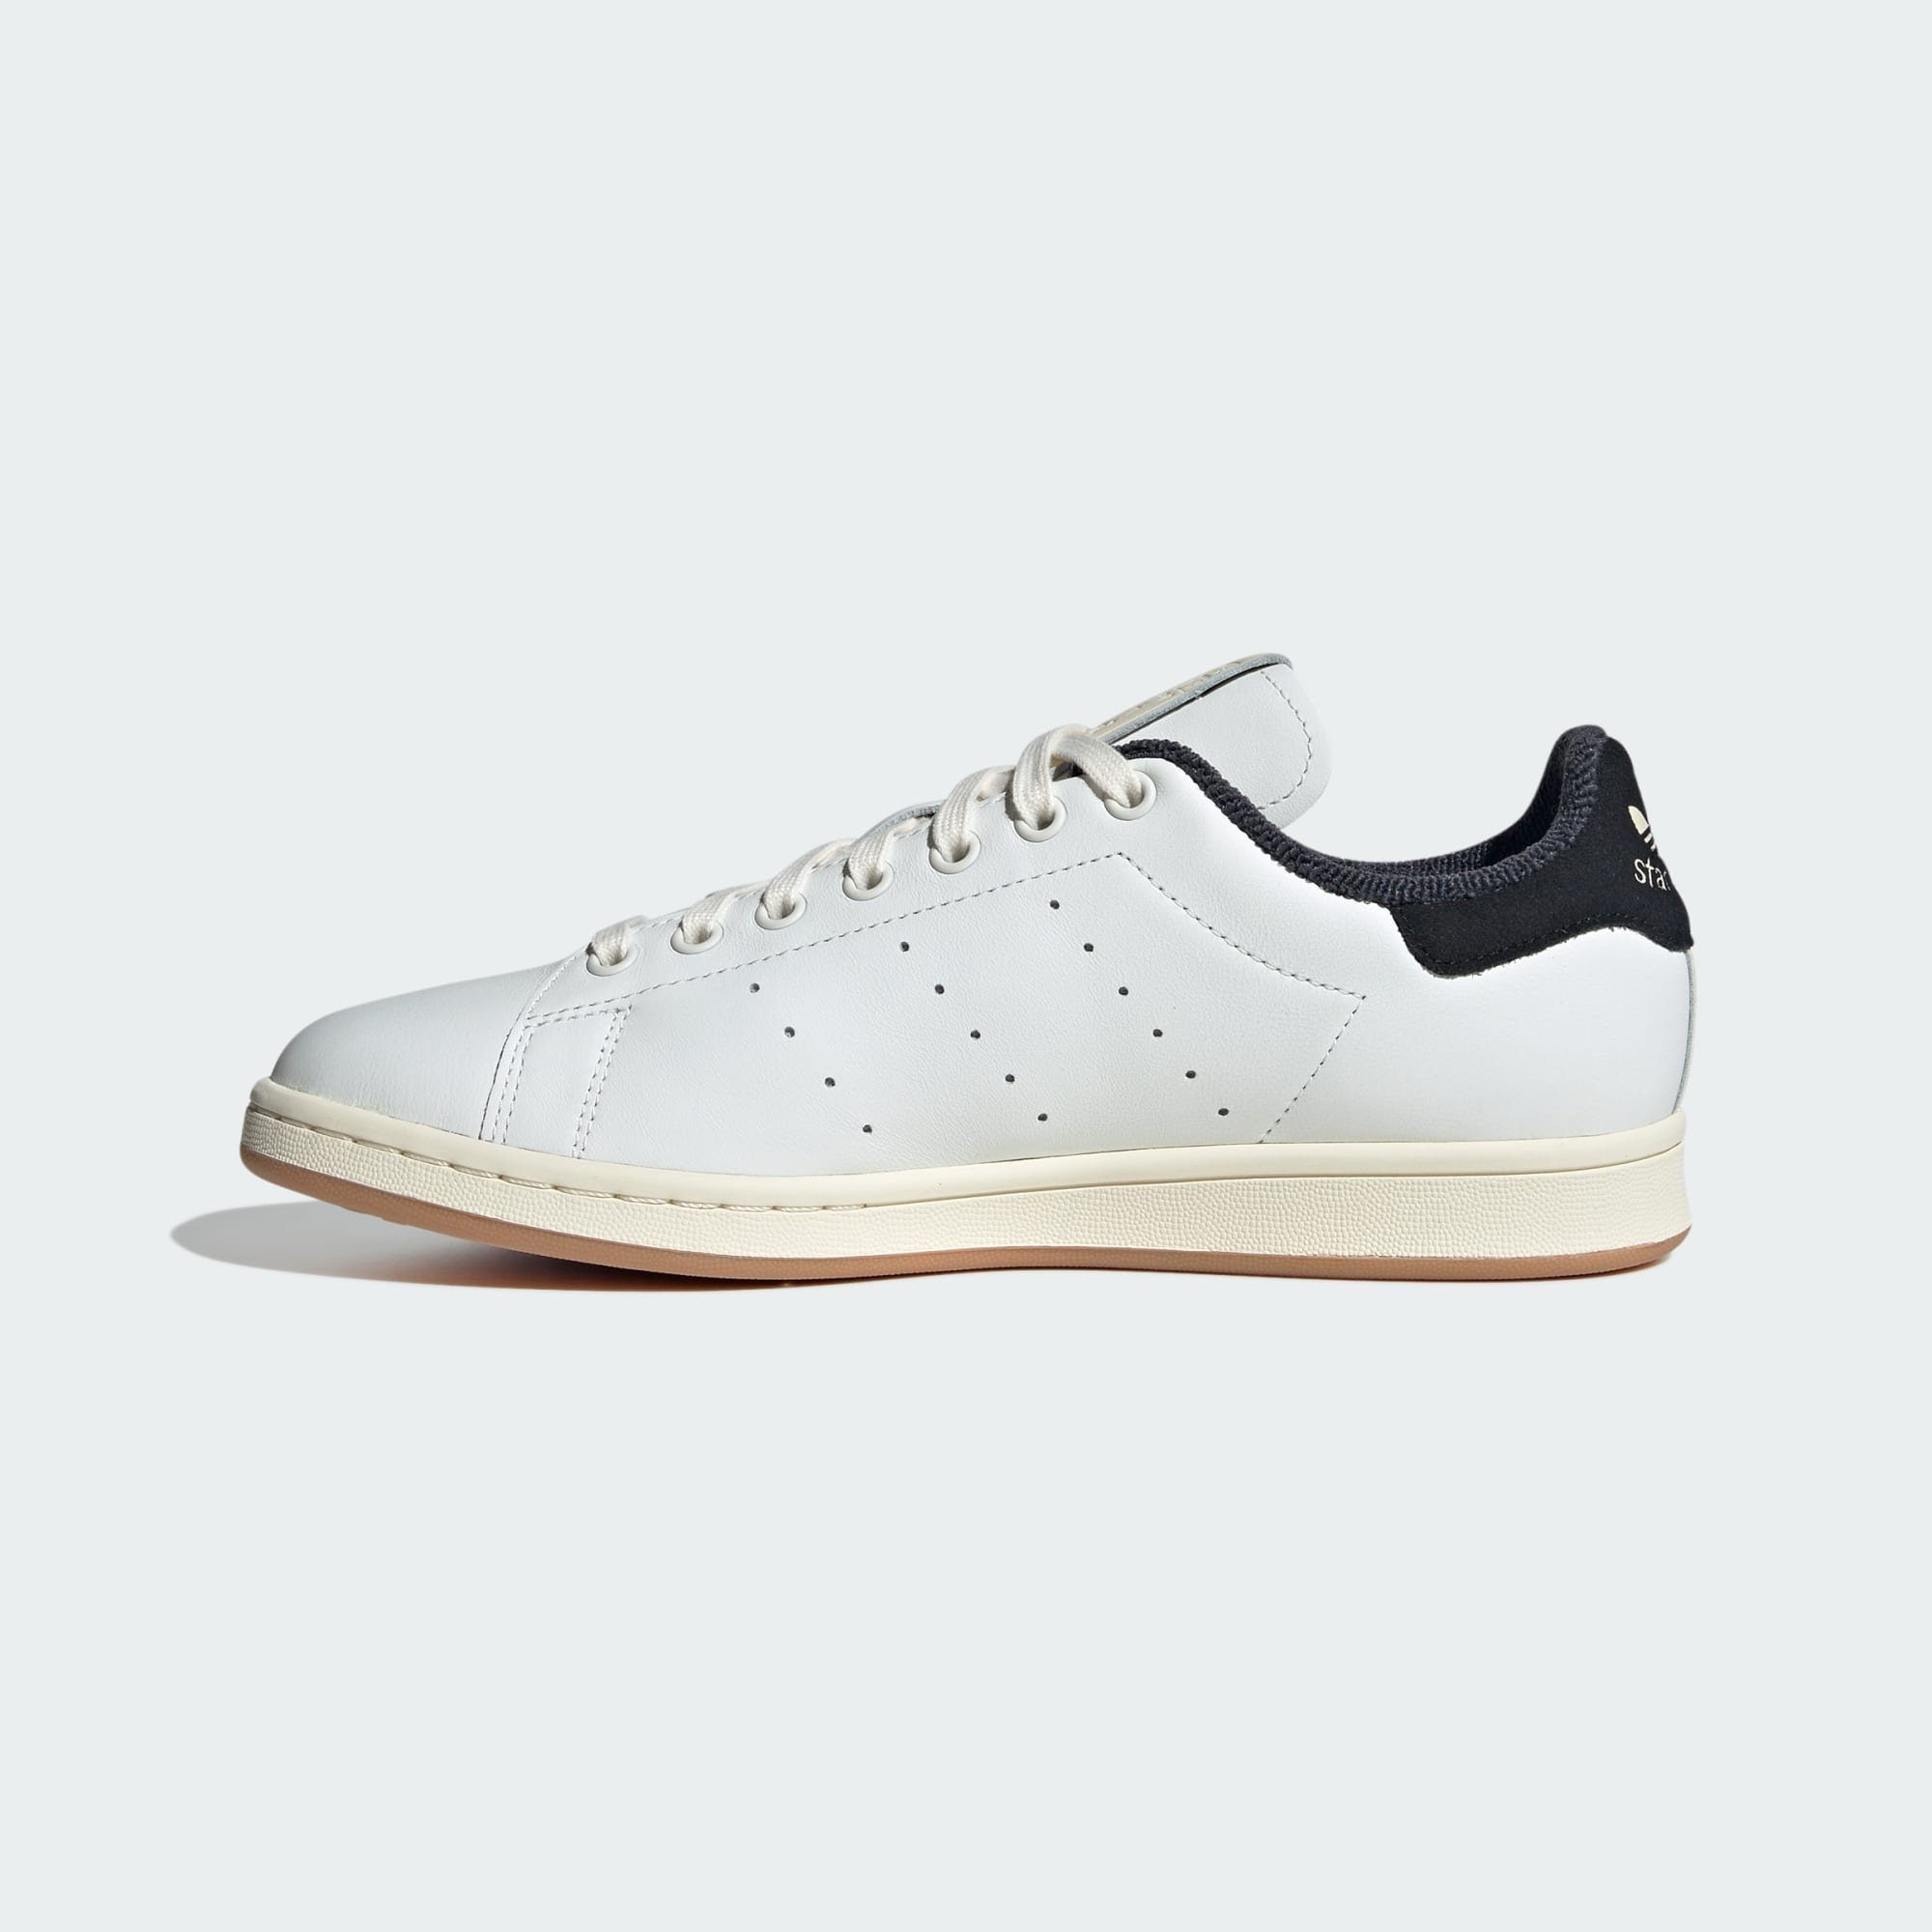 SCHUH Sneaker / adidas White / Cream Core Black SMITH STAN Originals Core White